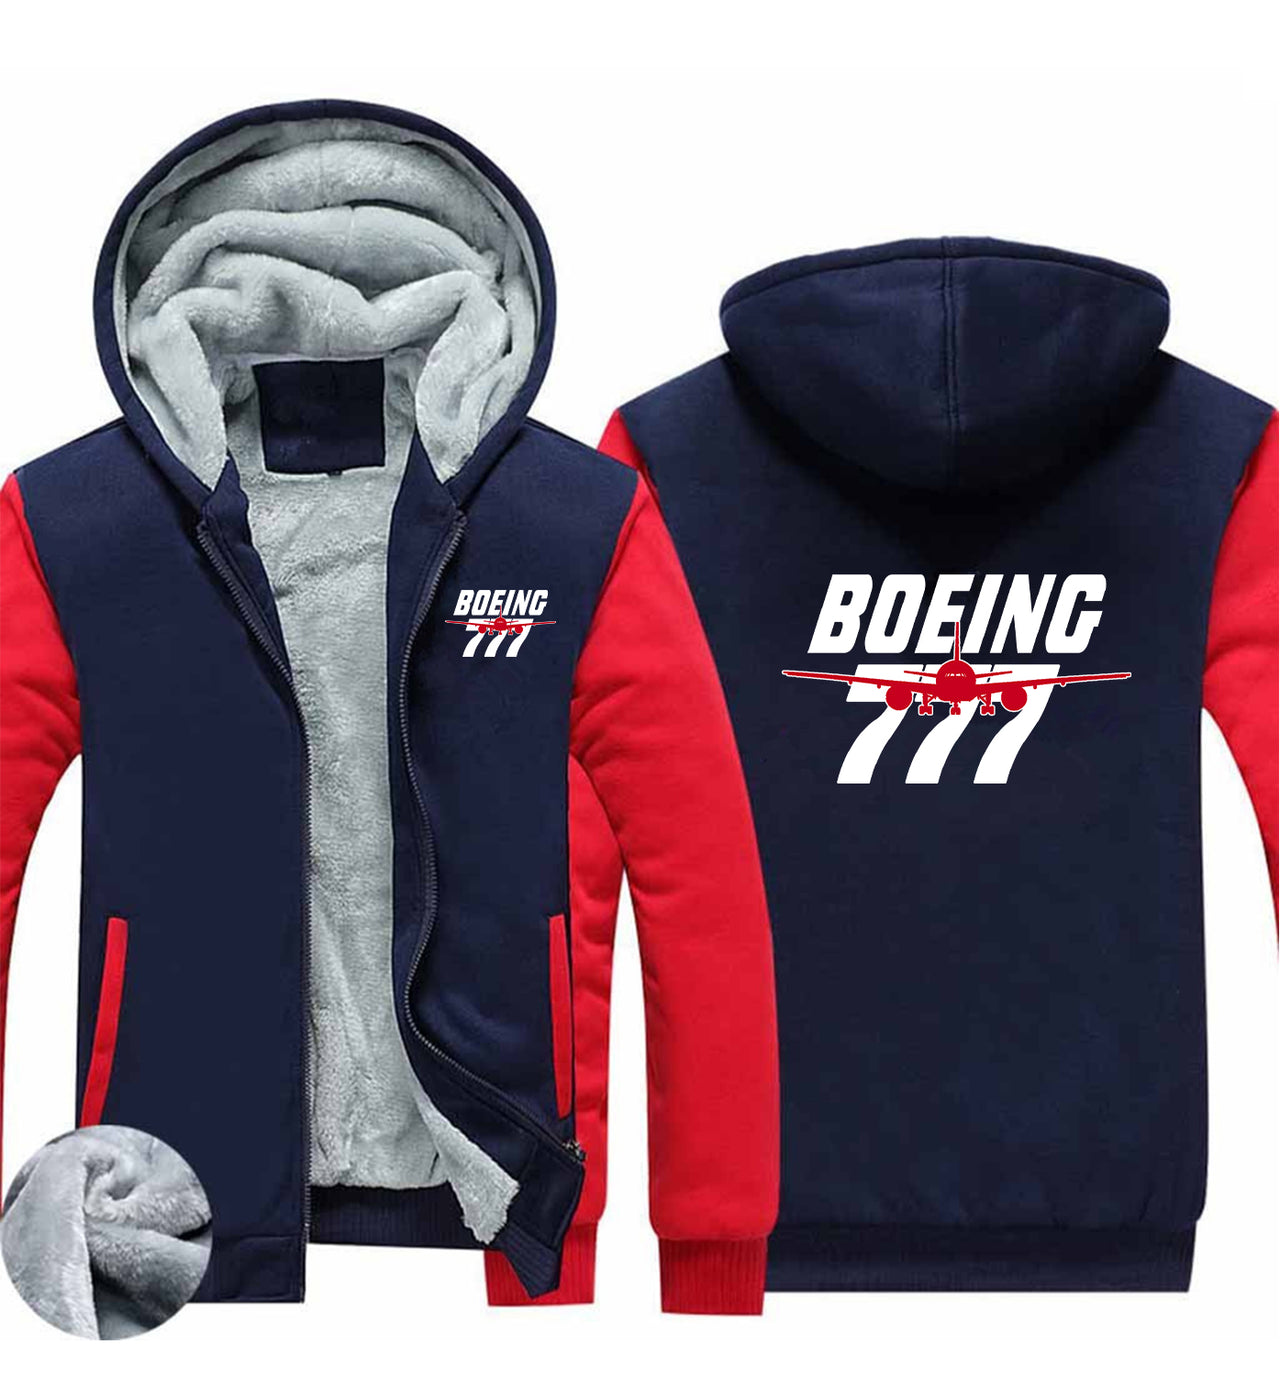 Amazing Boeing 777 Designed Zipped Sweatshirts